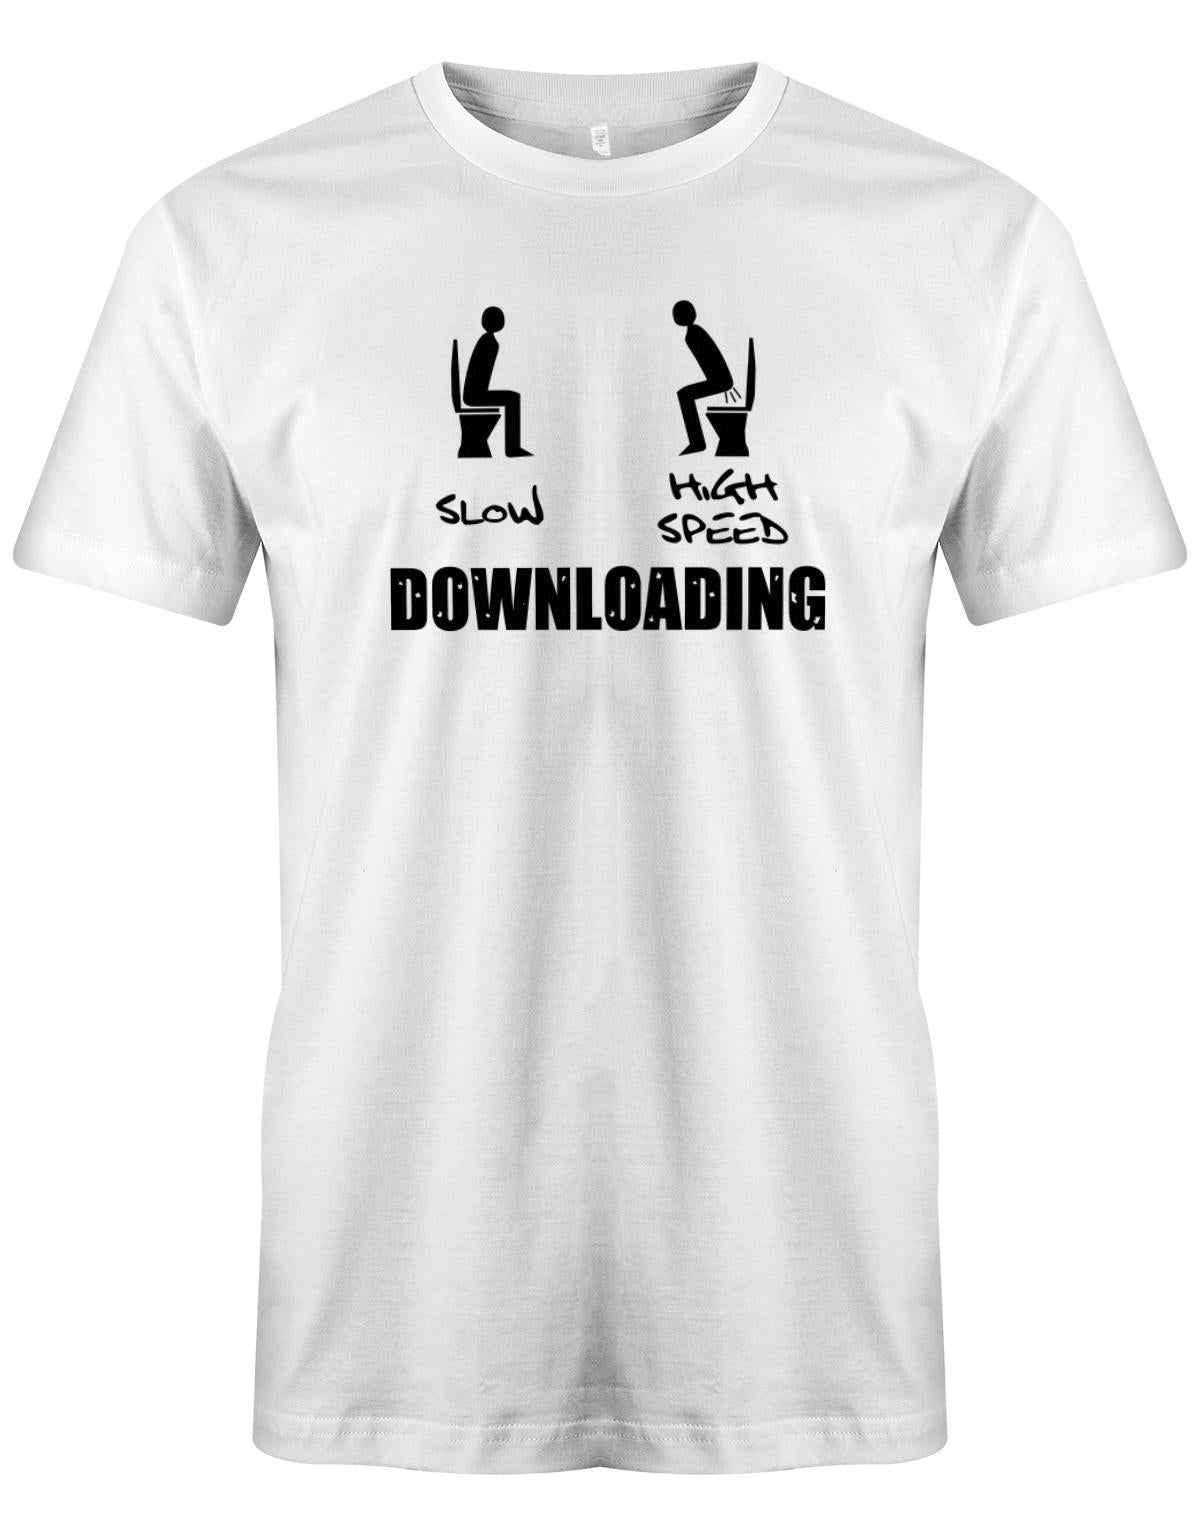 Downloading-Slow-Highspeed-Gamer-Shirt-Weiss